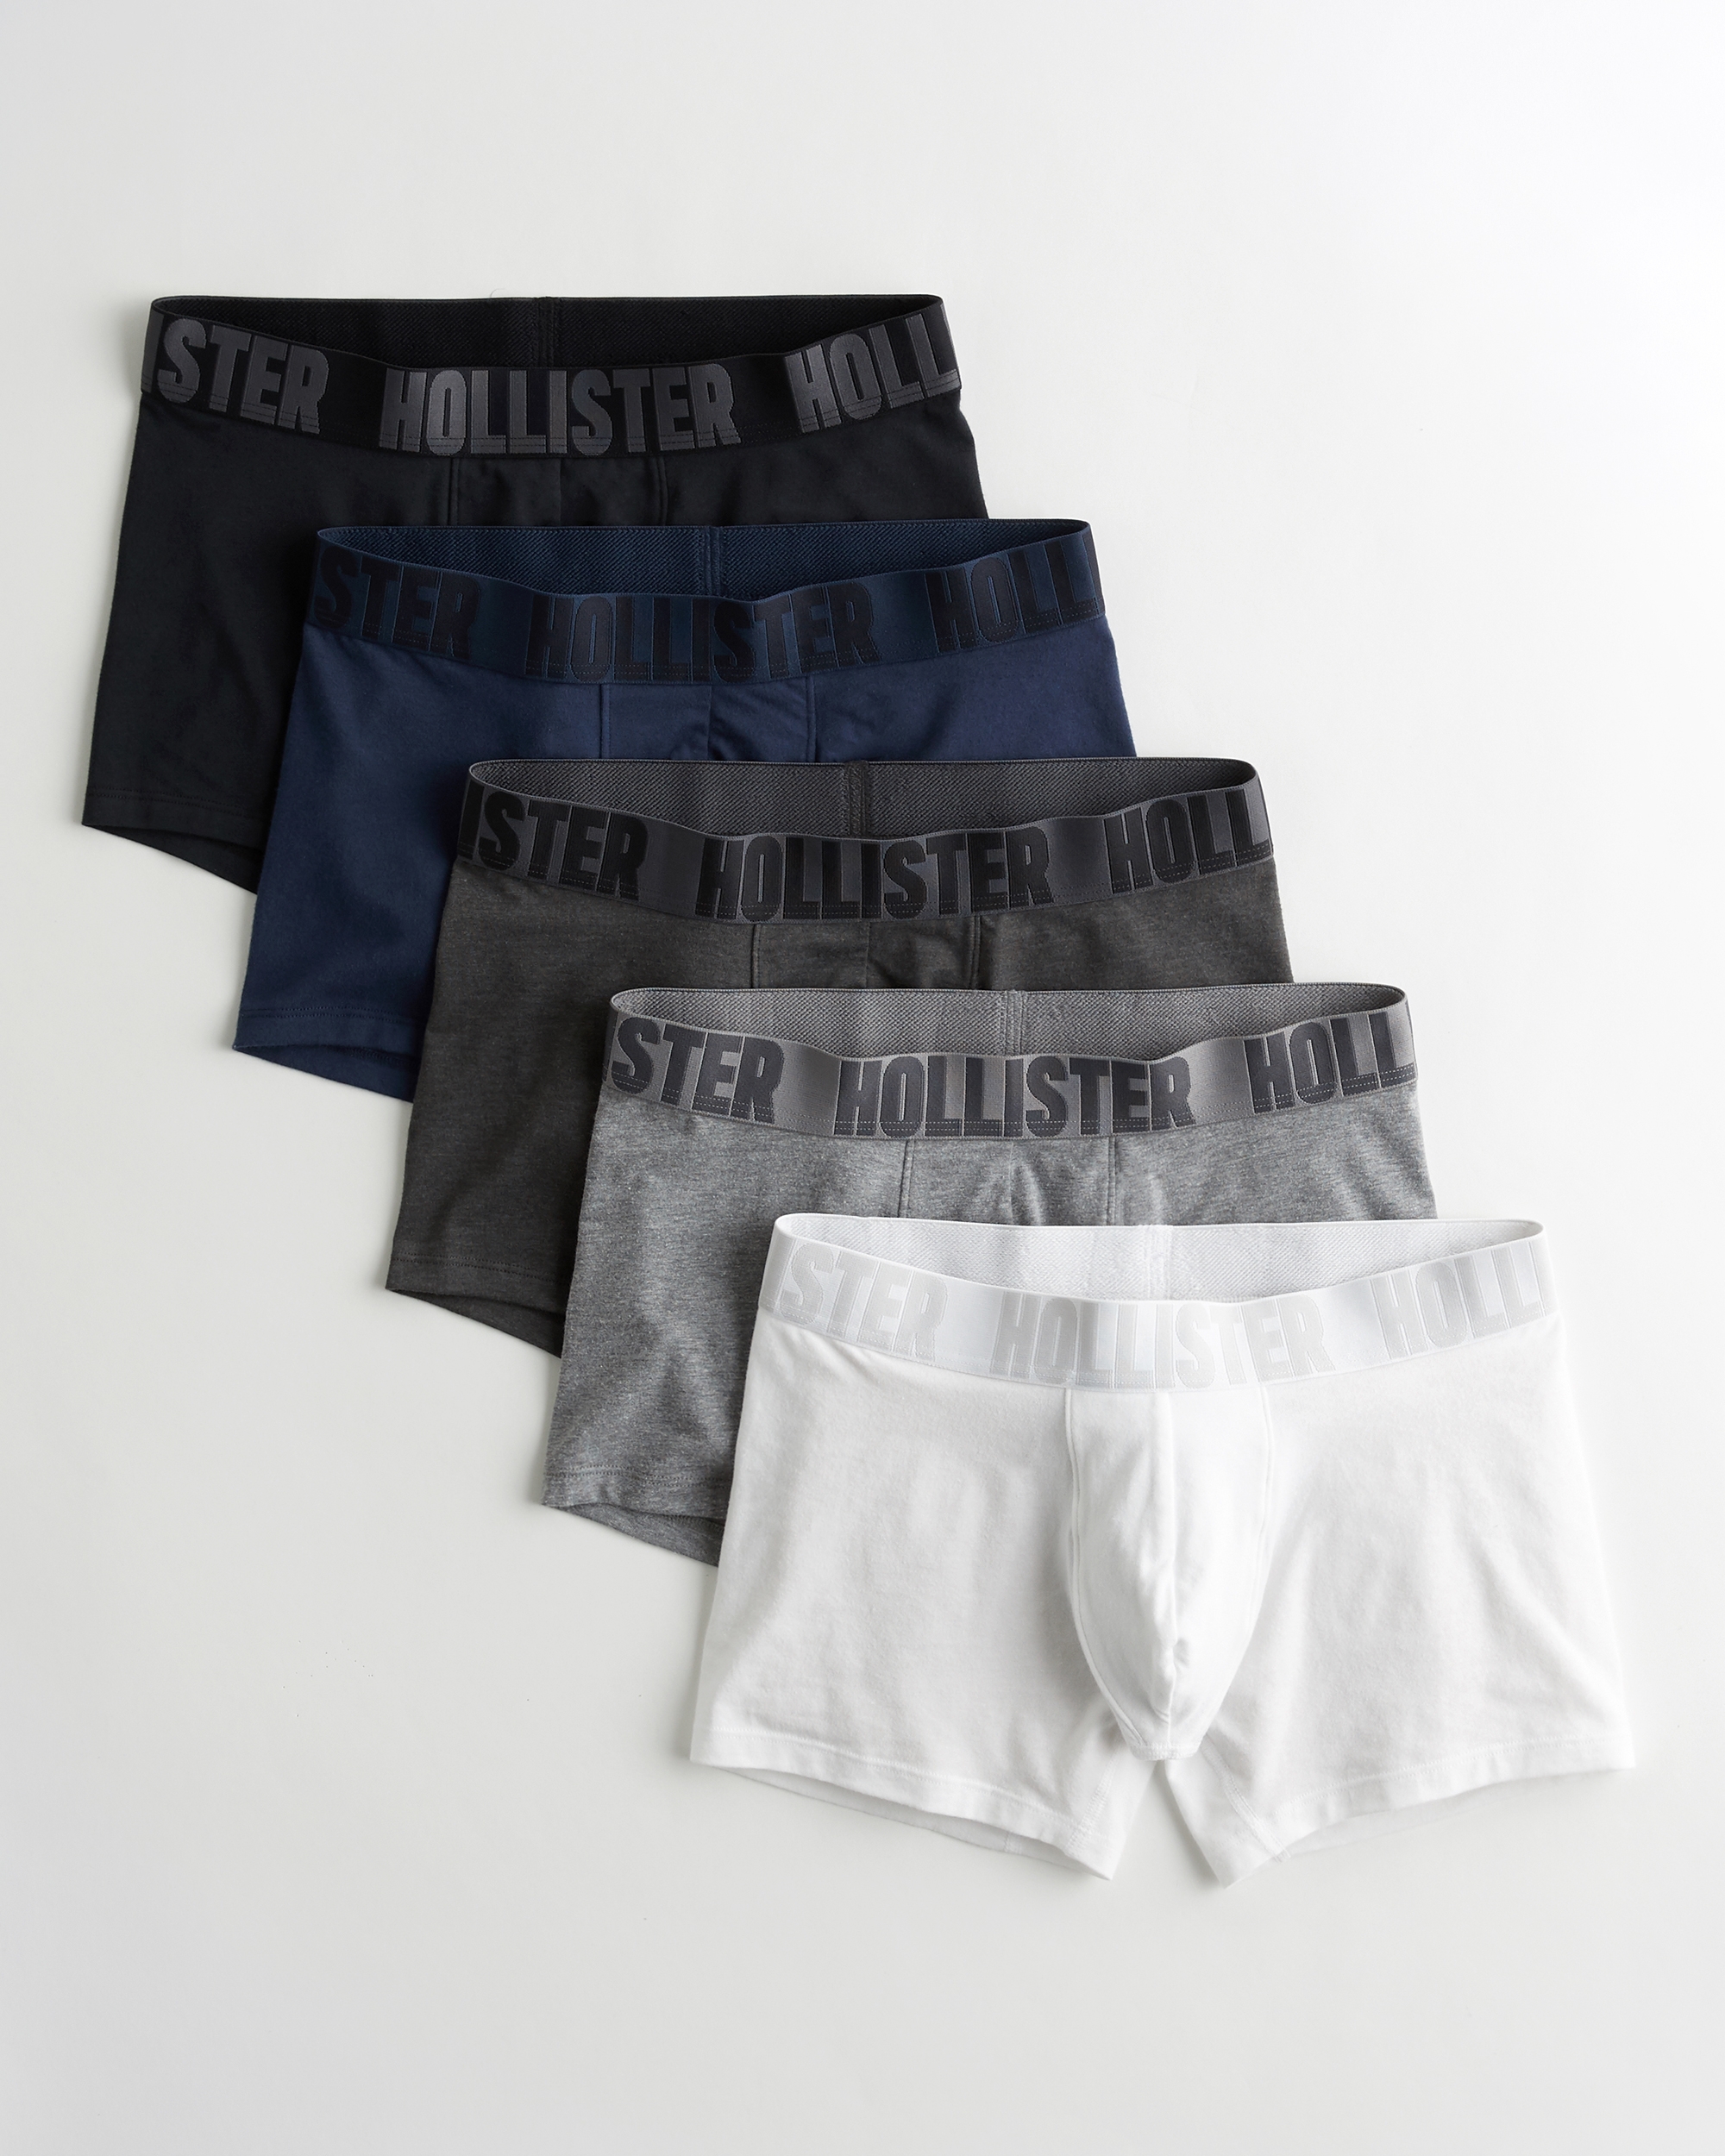 hollister underwear uk